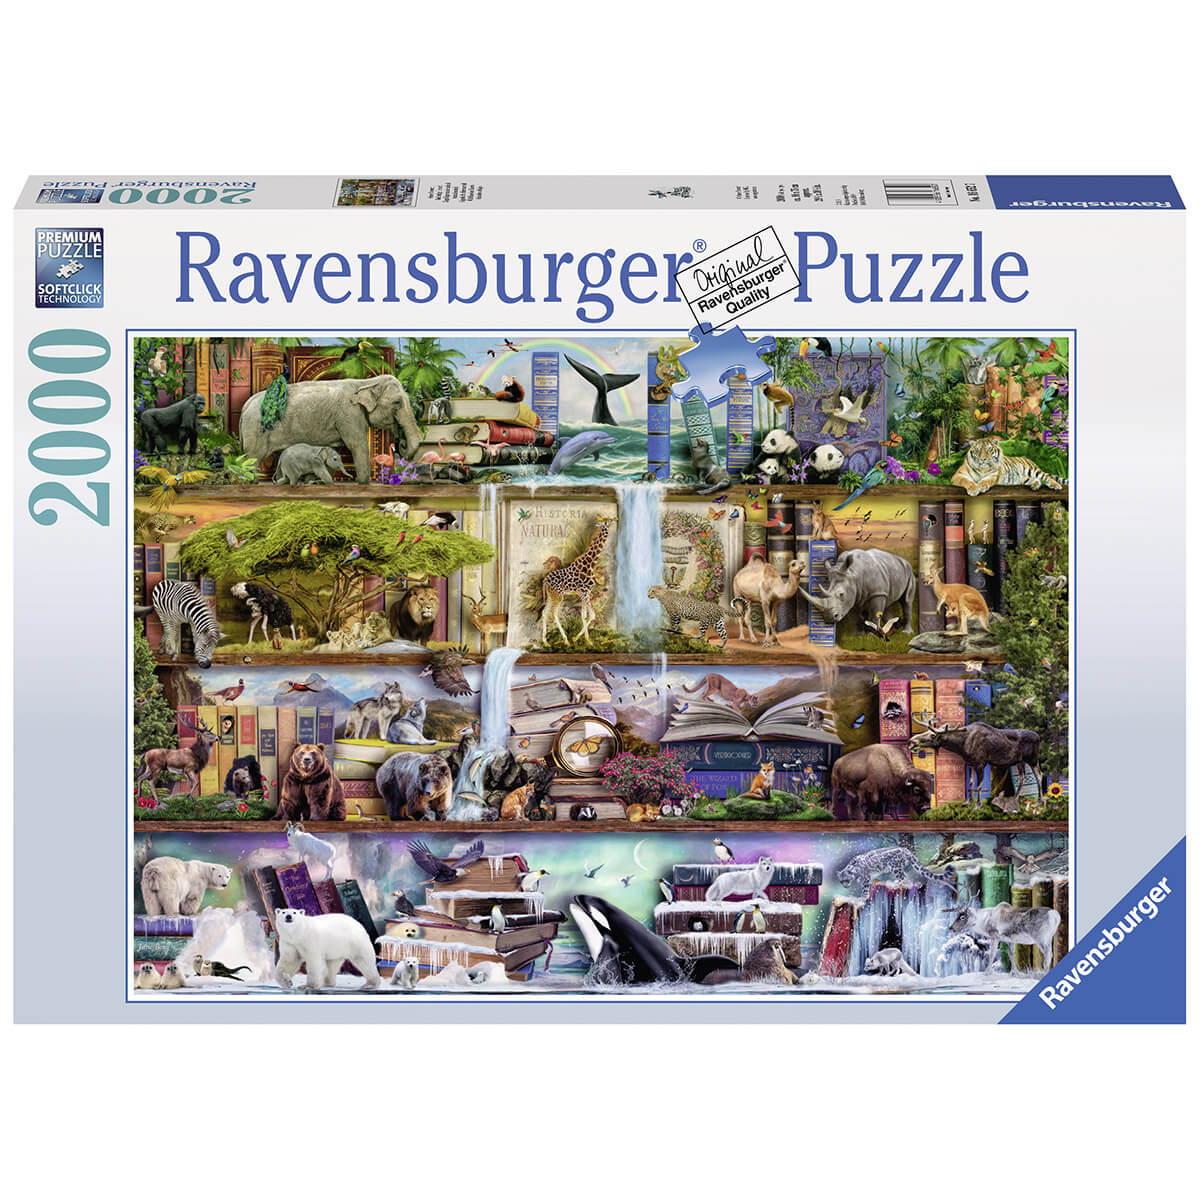 Ravensburger Wild Kingdom Shelves 2000 Piece Puzzle